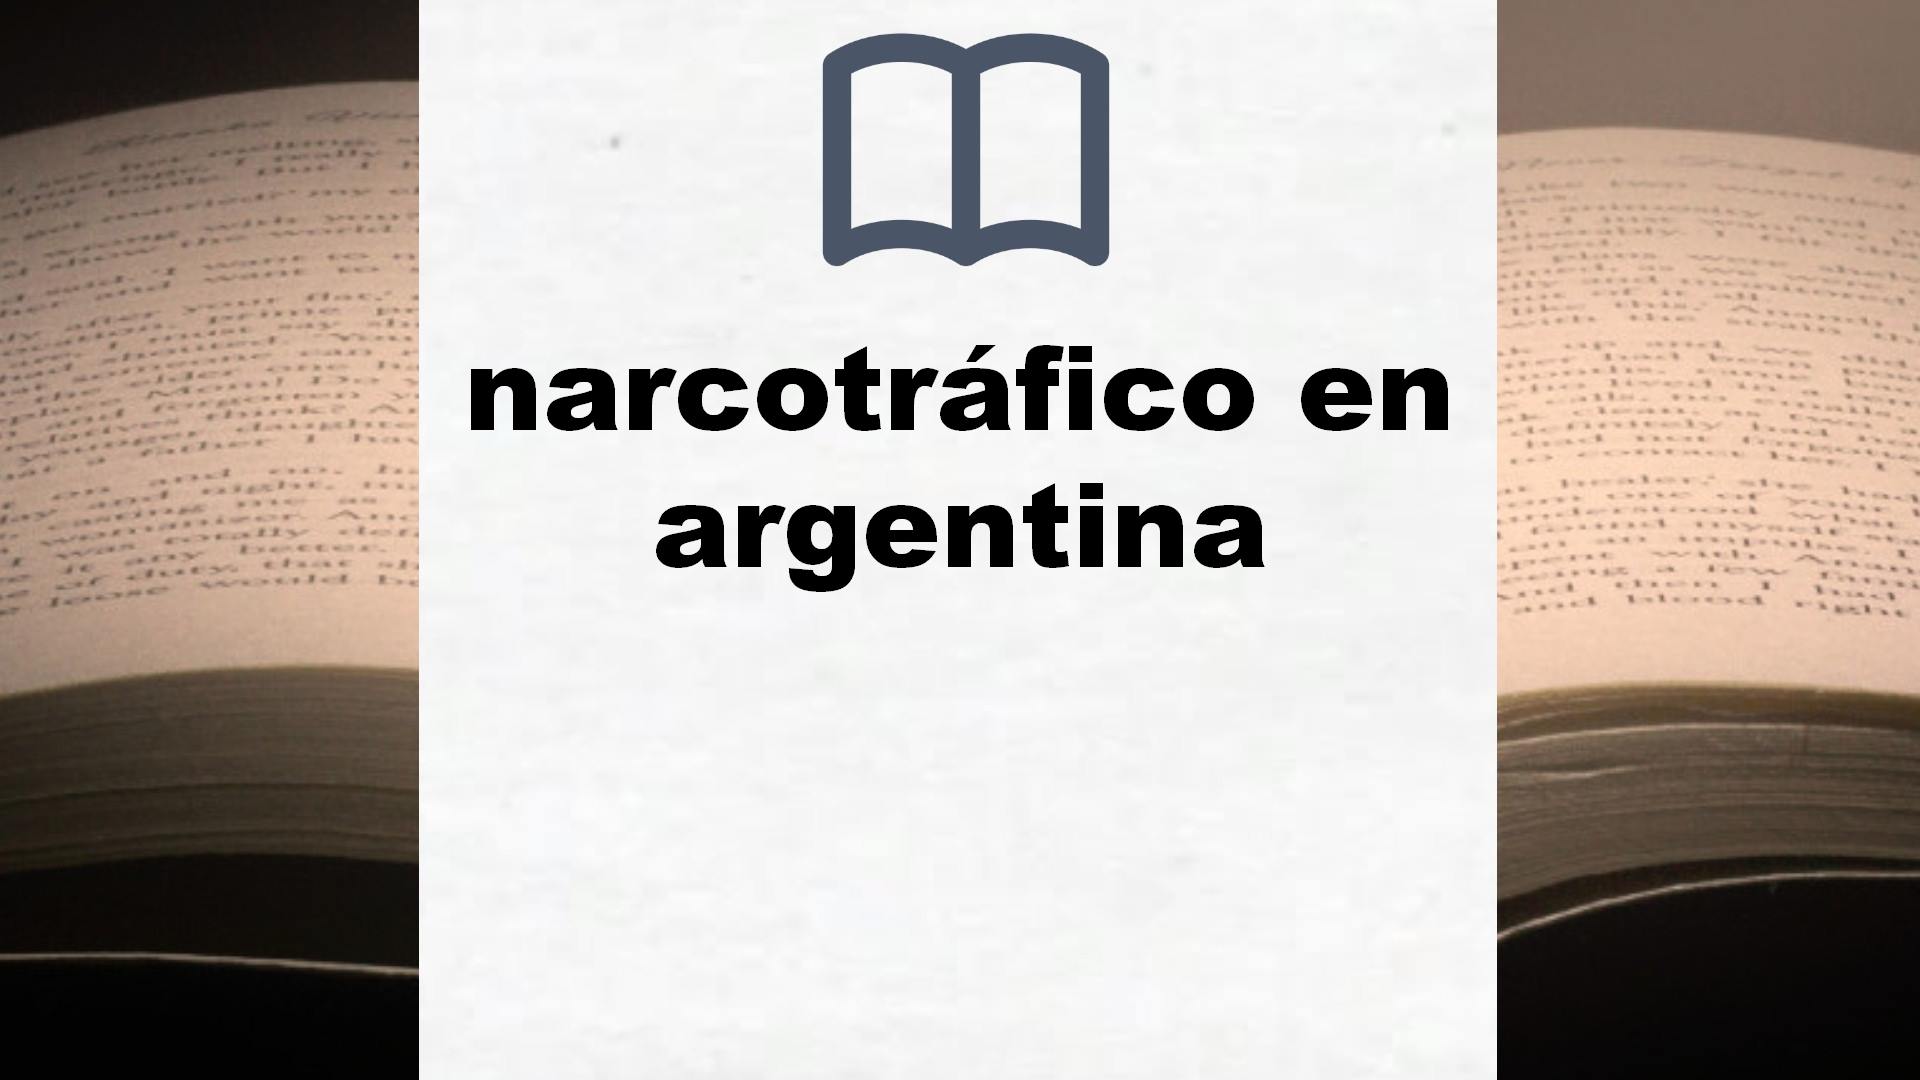 Libros sobre narcotráfico en argentina